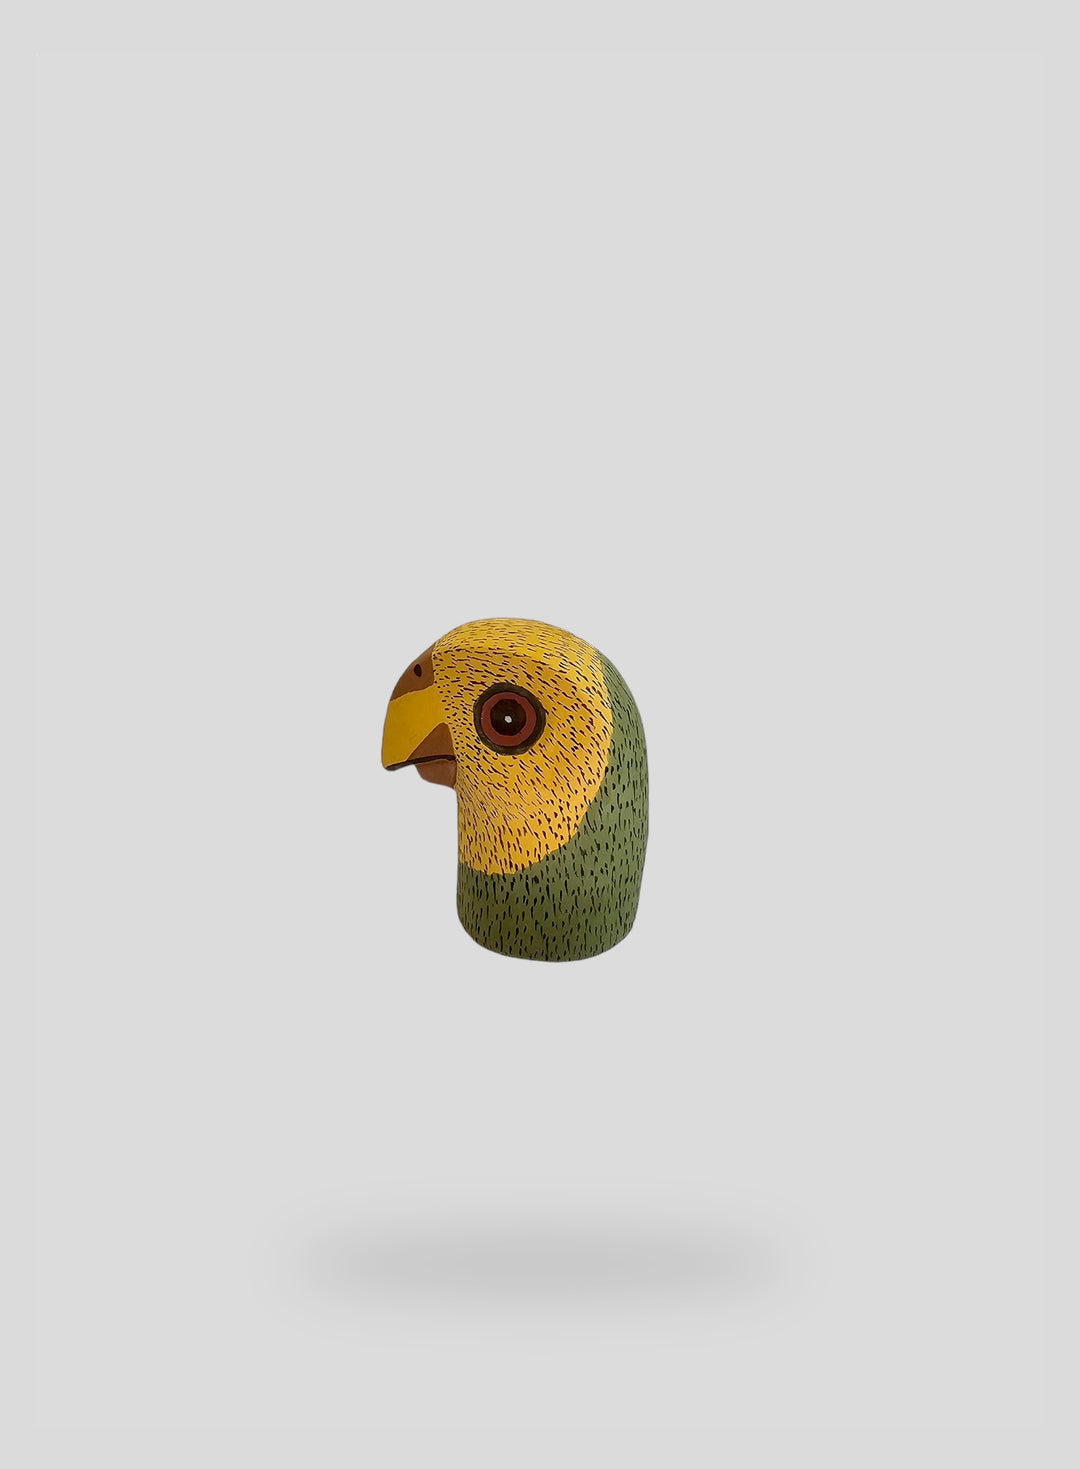 The Mini Parrot Sculpture